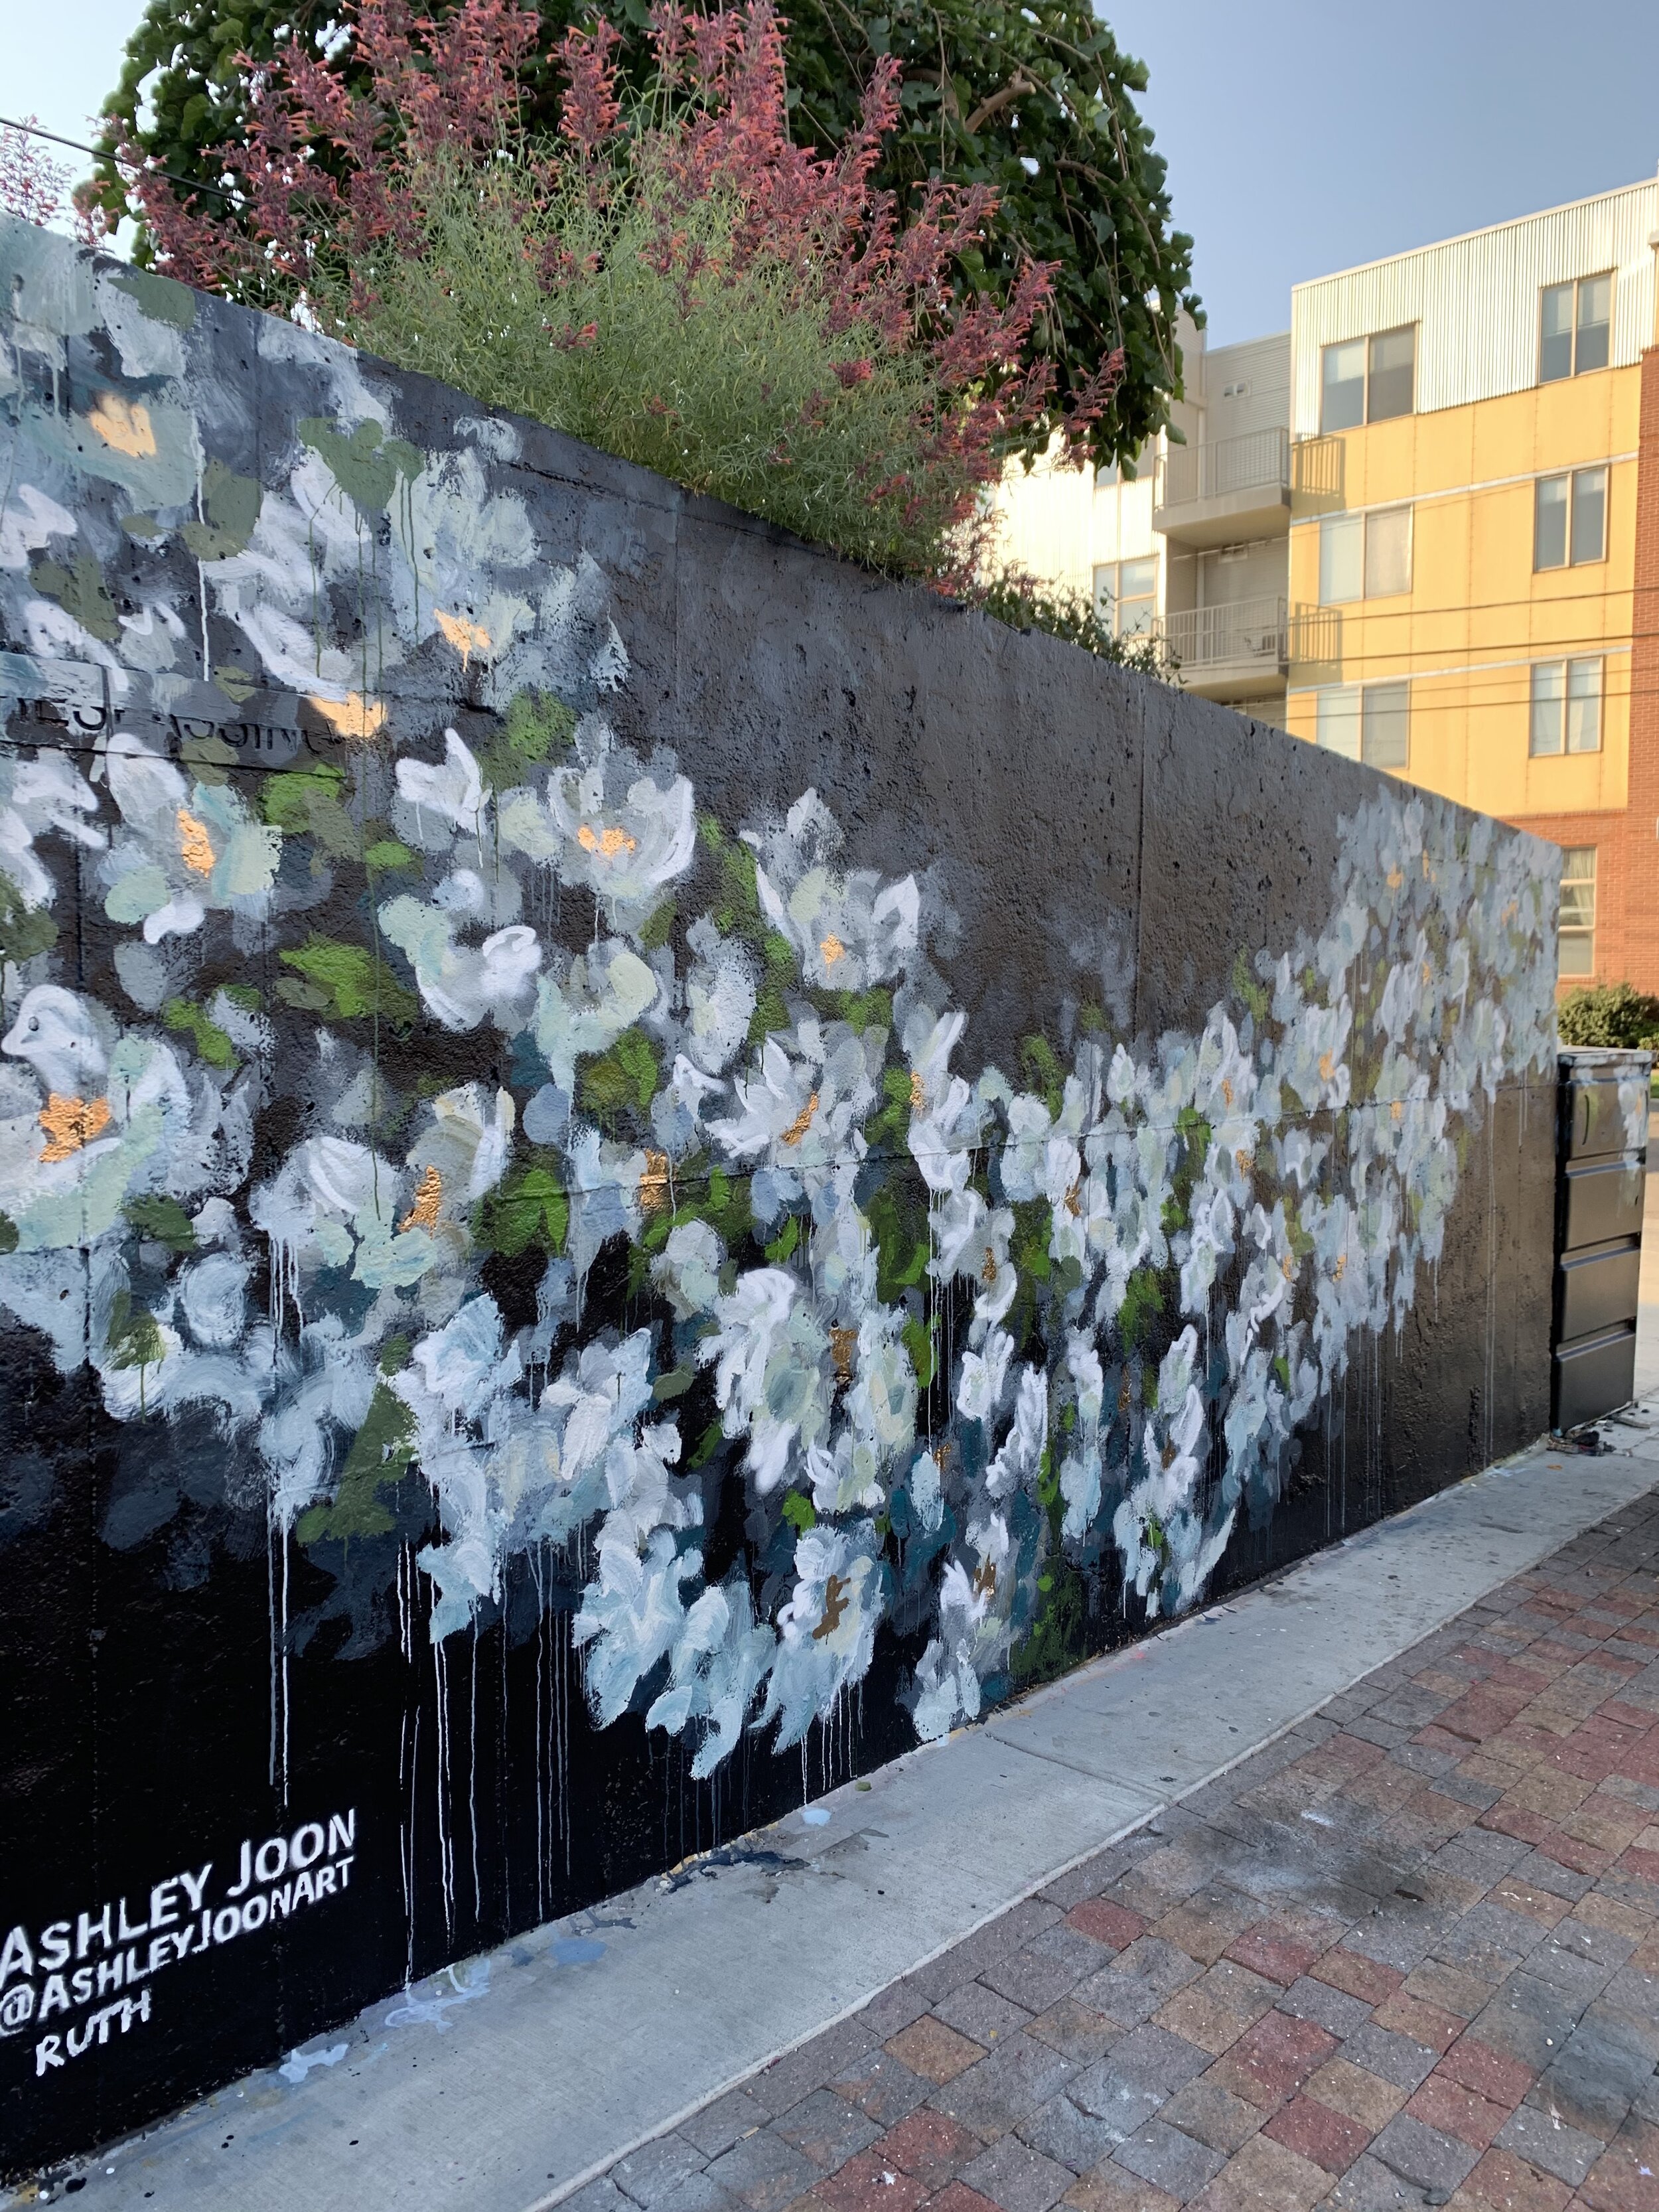 Ruth Bader Ginsburg Mural_Side View_AshleyJoon_2020_Crush walls.jpg